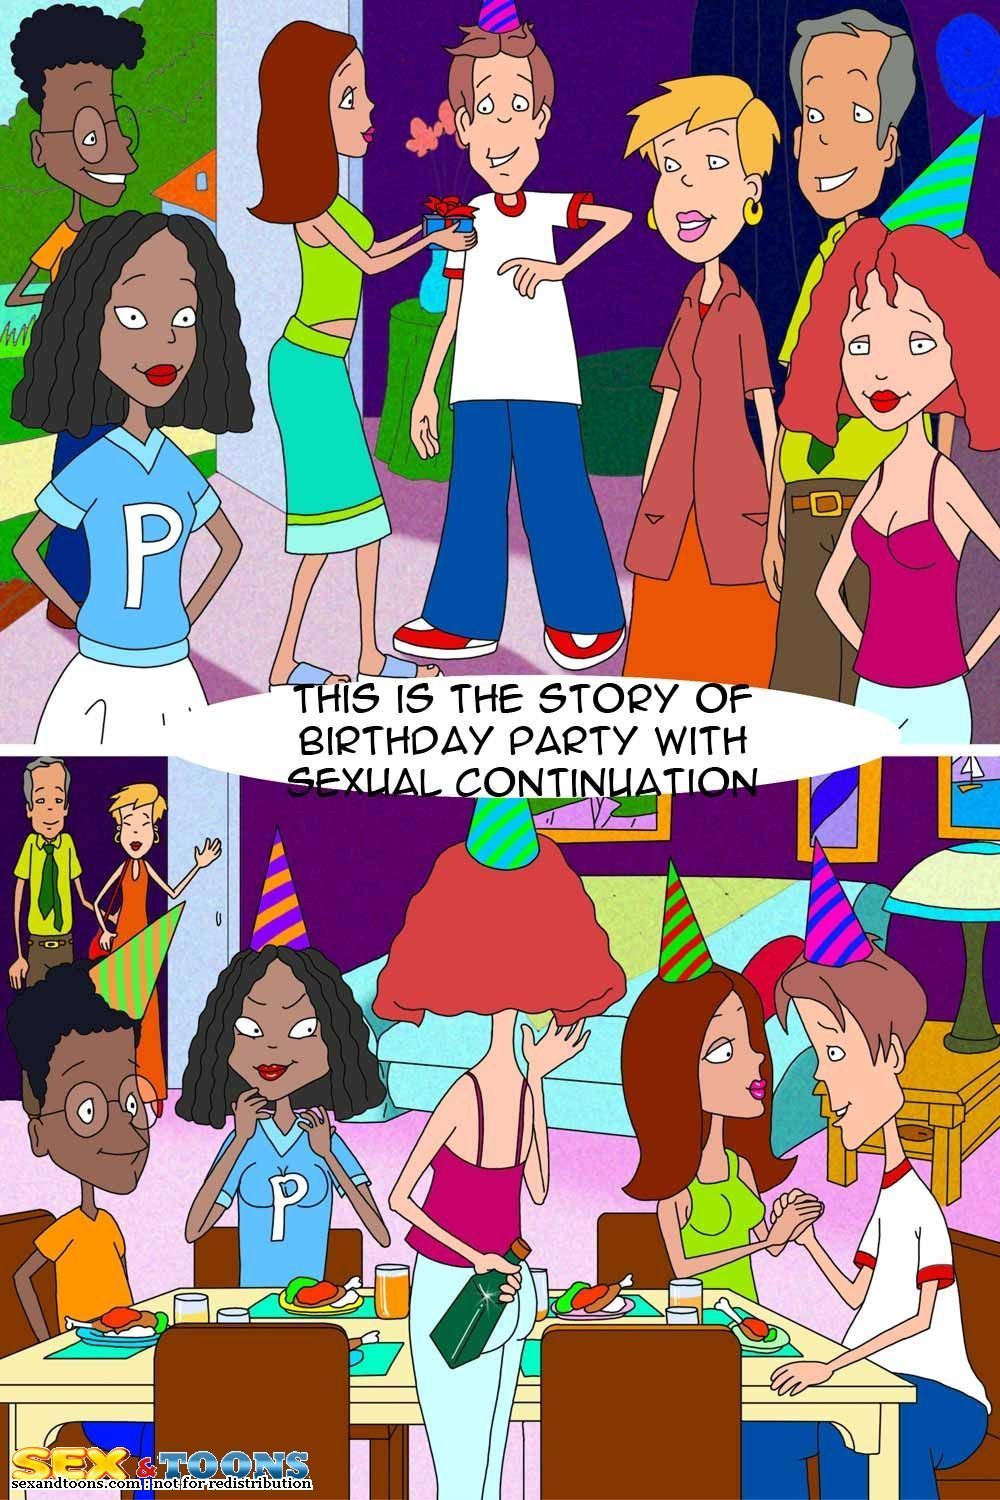 الجنس و رسوم متحركة هذا هو على القصة من عيد ميلاد الطرف مع :الجنسية: استمرار (whats مع andy?)